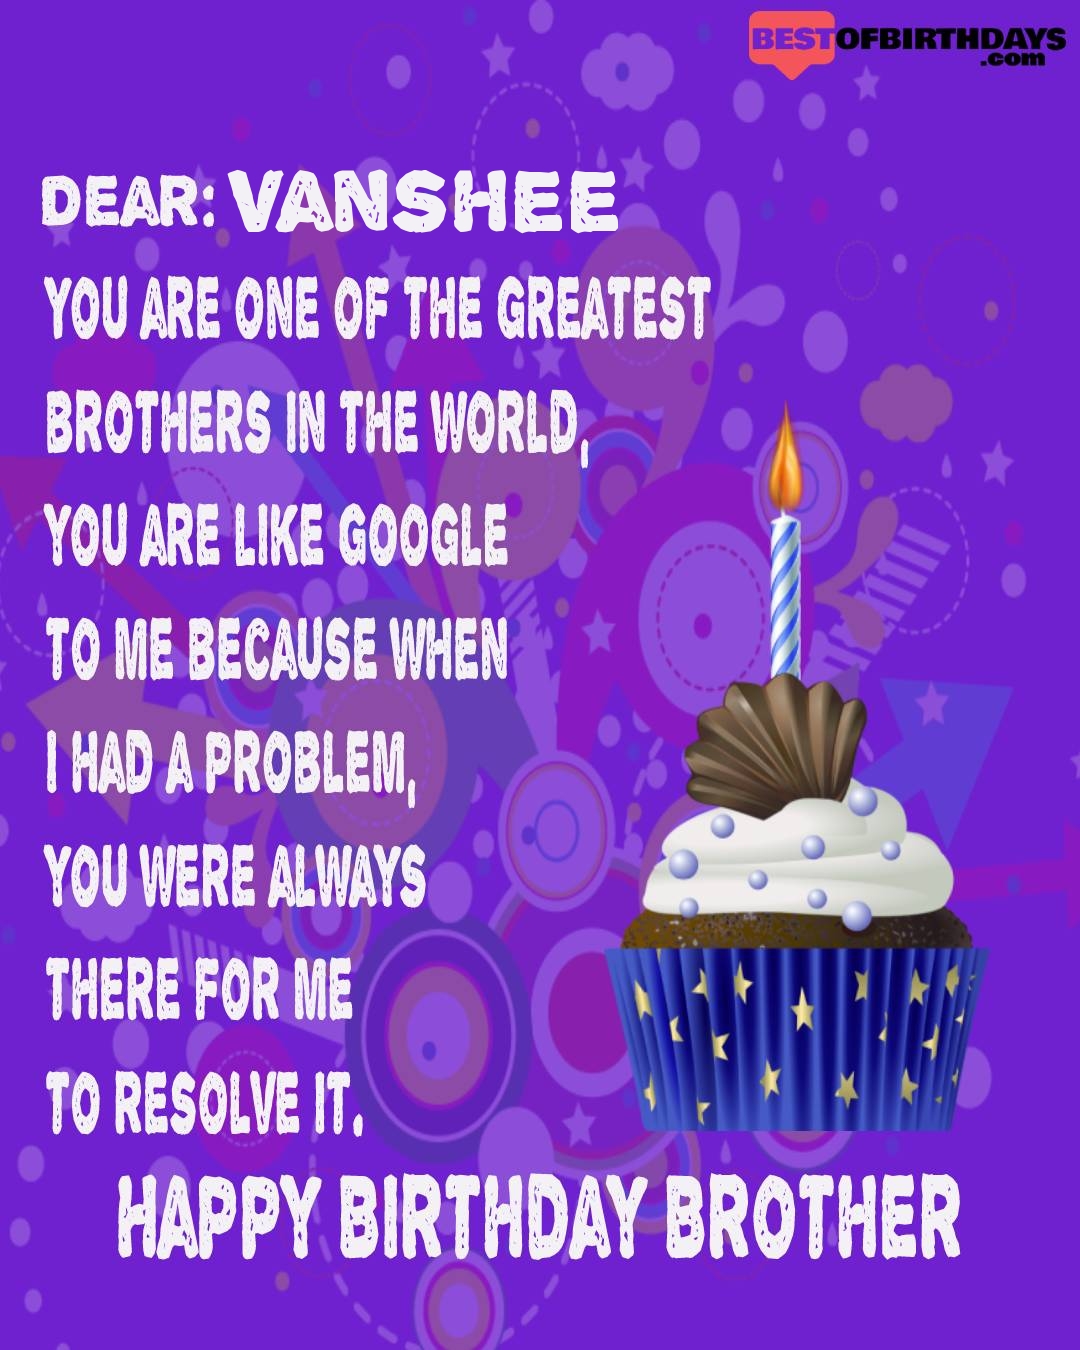 Happy birthday vanshee bhai brother bro